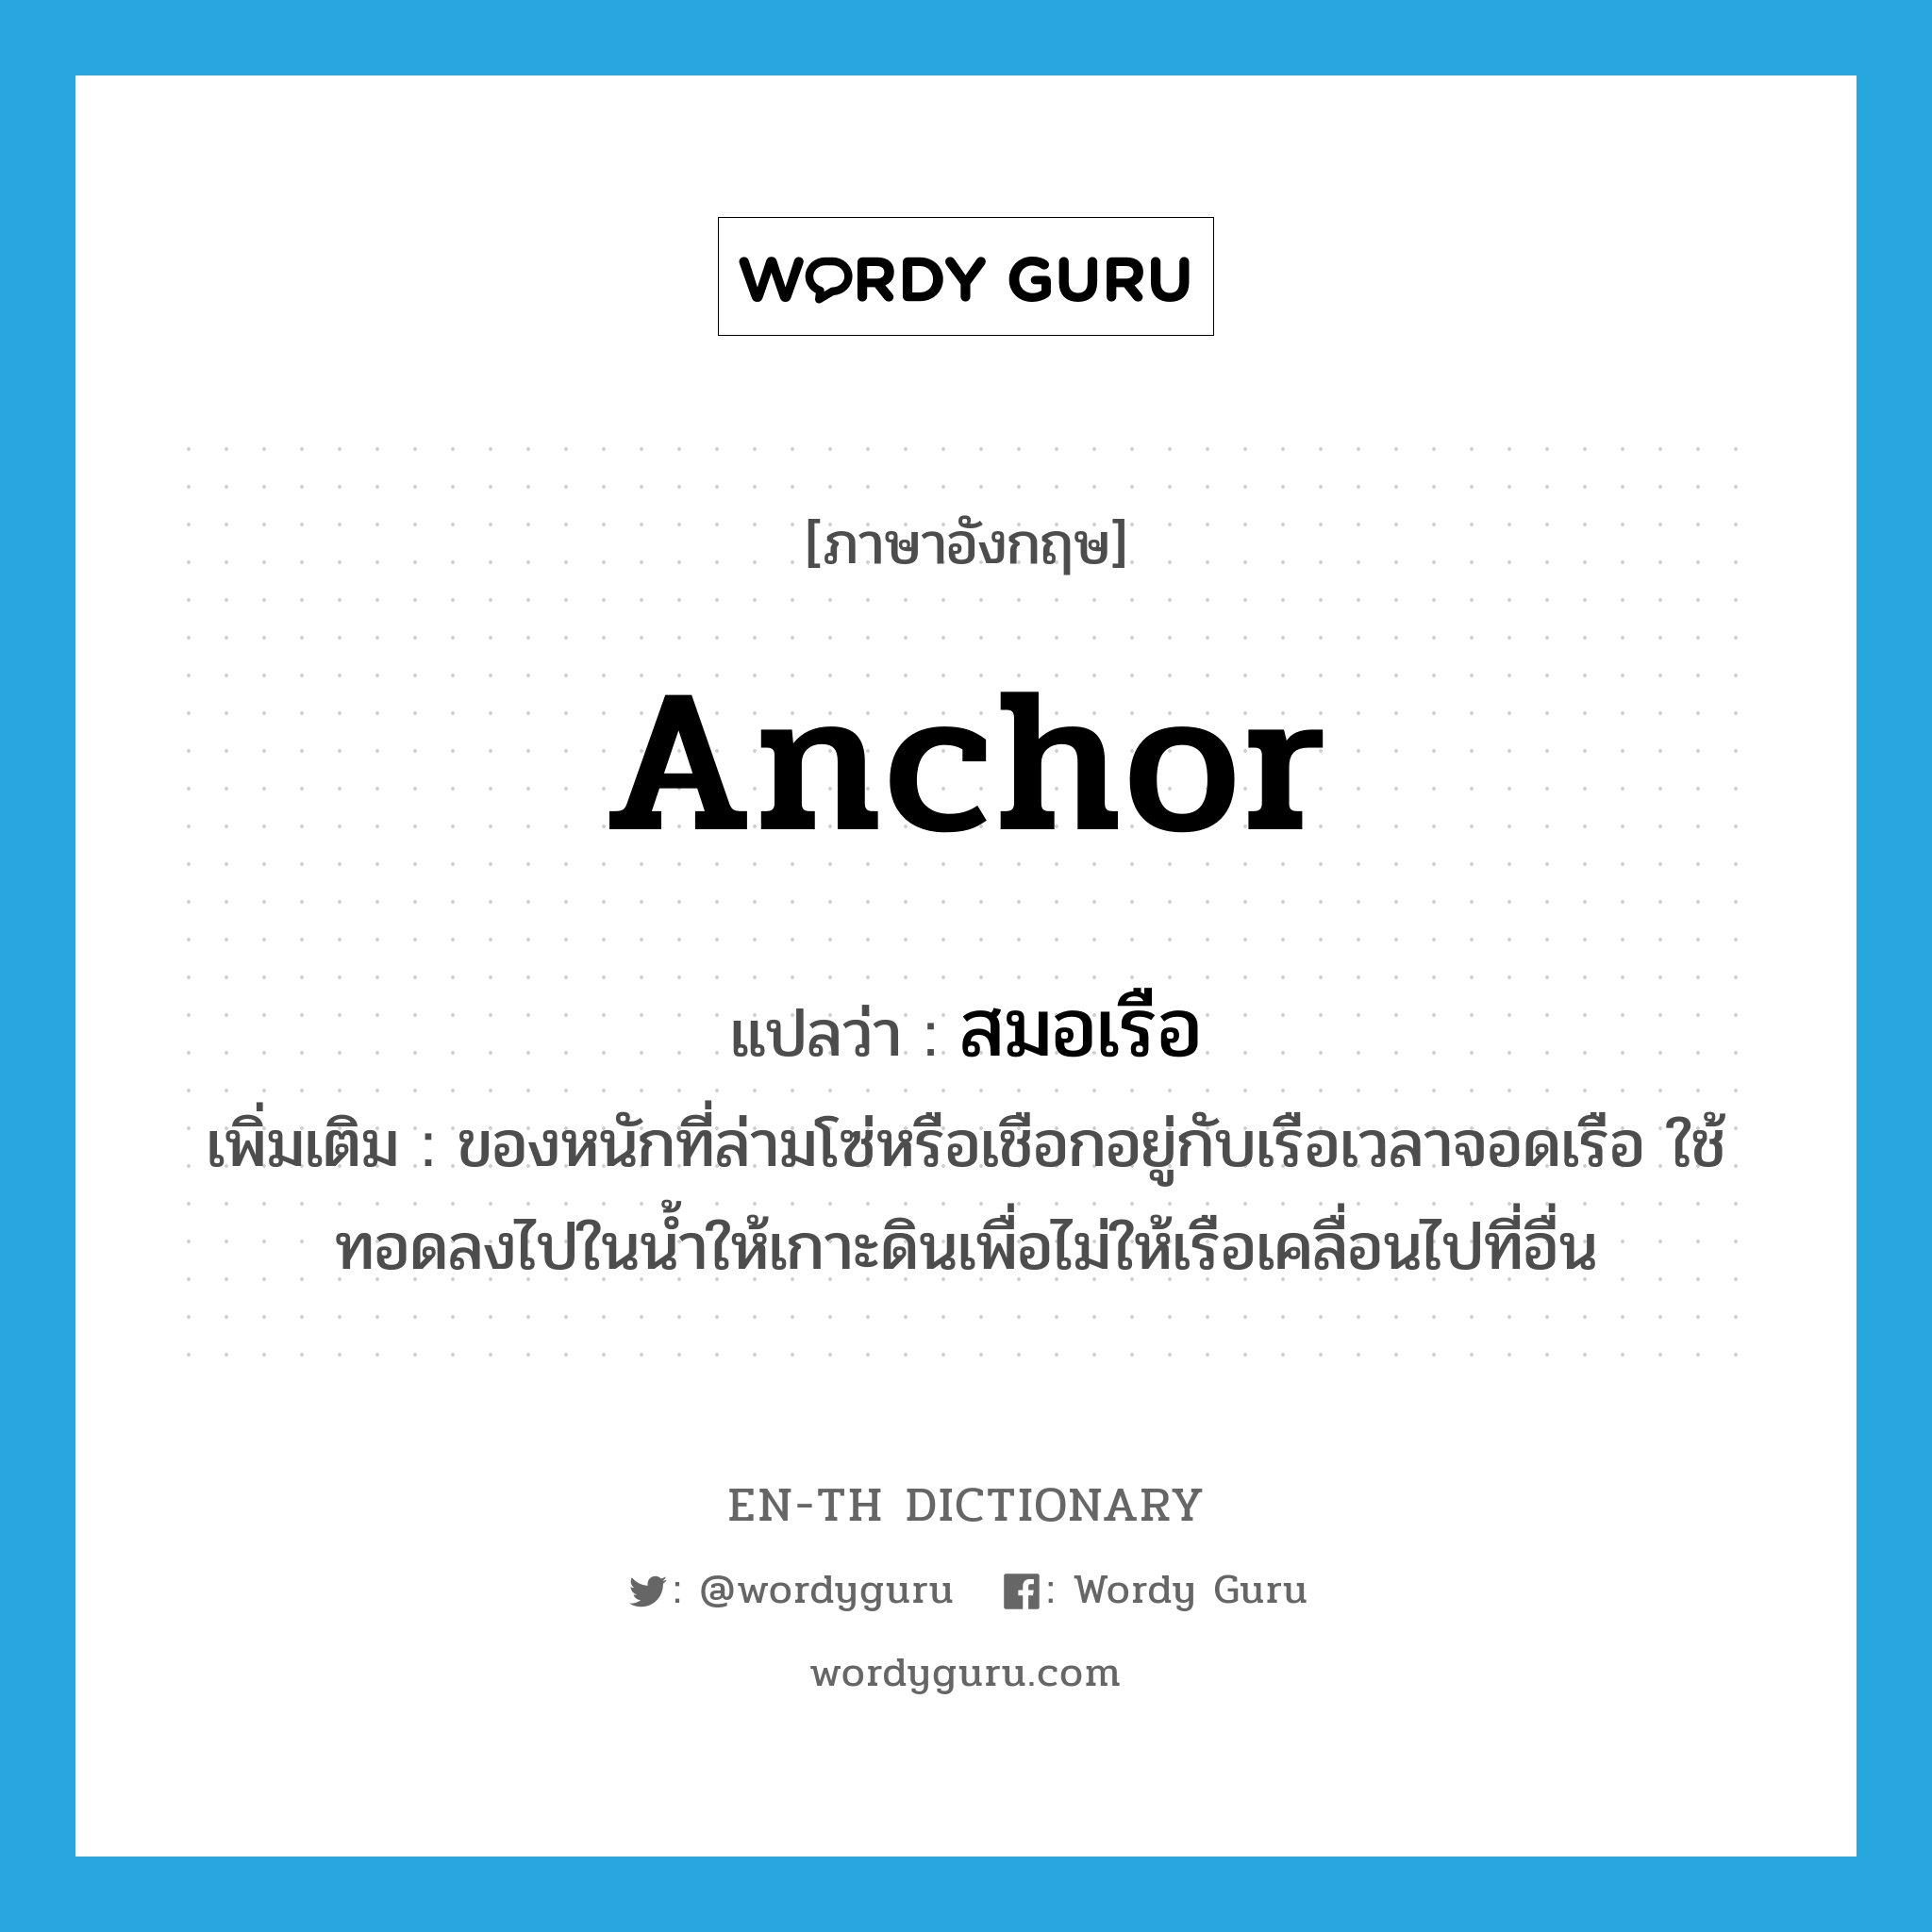 anchor แปลว่า?, คำศัพท์ภาษาอังกฤษ anchor แปลว่า สมอเรือ ประเภท N เพิ่มเติม ของหนักที่ล่ามโซ่หรือเชือกอยู่กับเรือเวลาจอดเรือ ใช้ทอดลงไปในน้ำให้เกาะดินเพื่อไม่ให้เรือเคลื่อนไปที่อื่น หมวด N